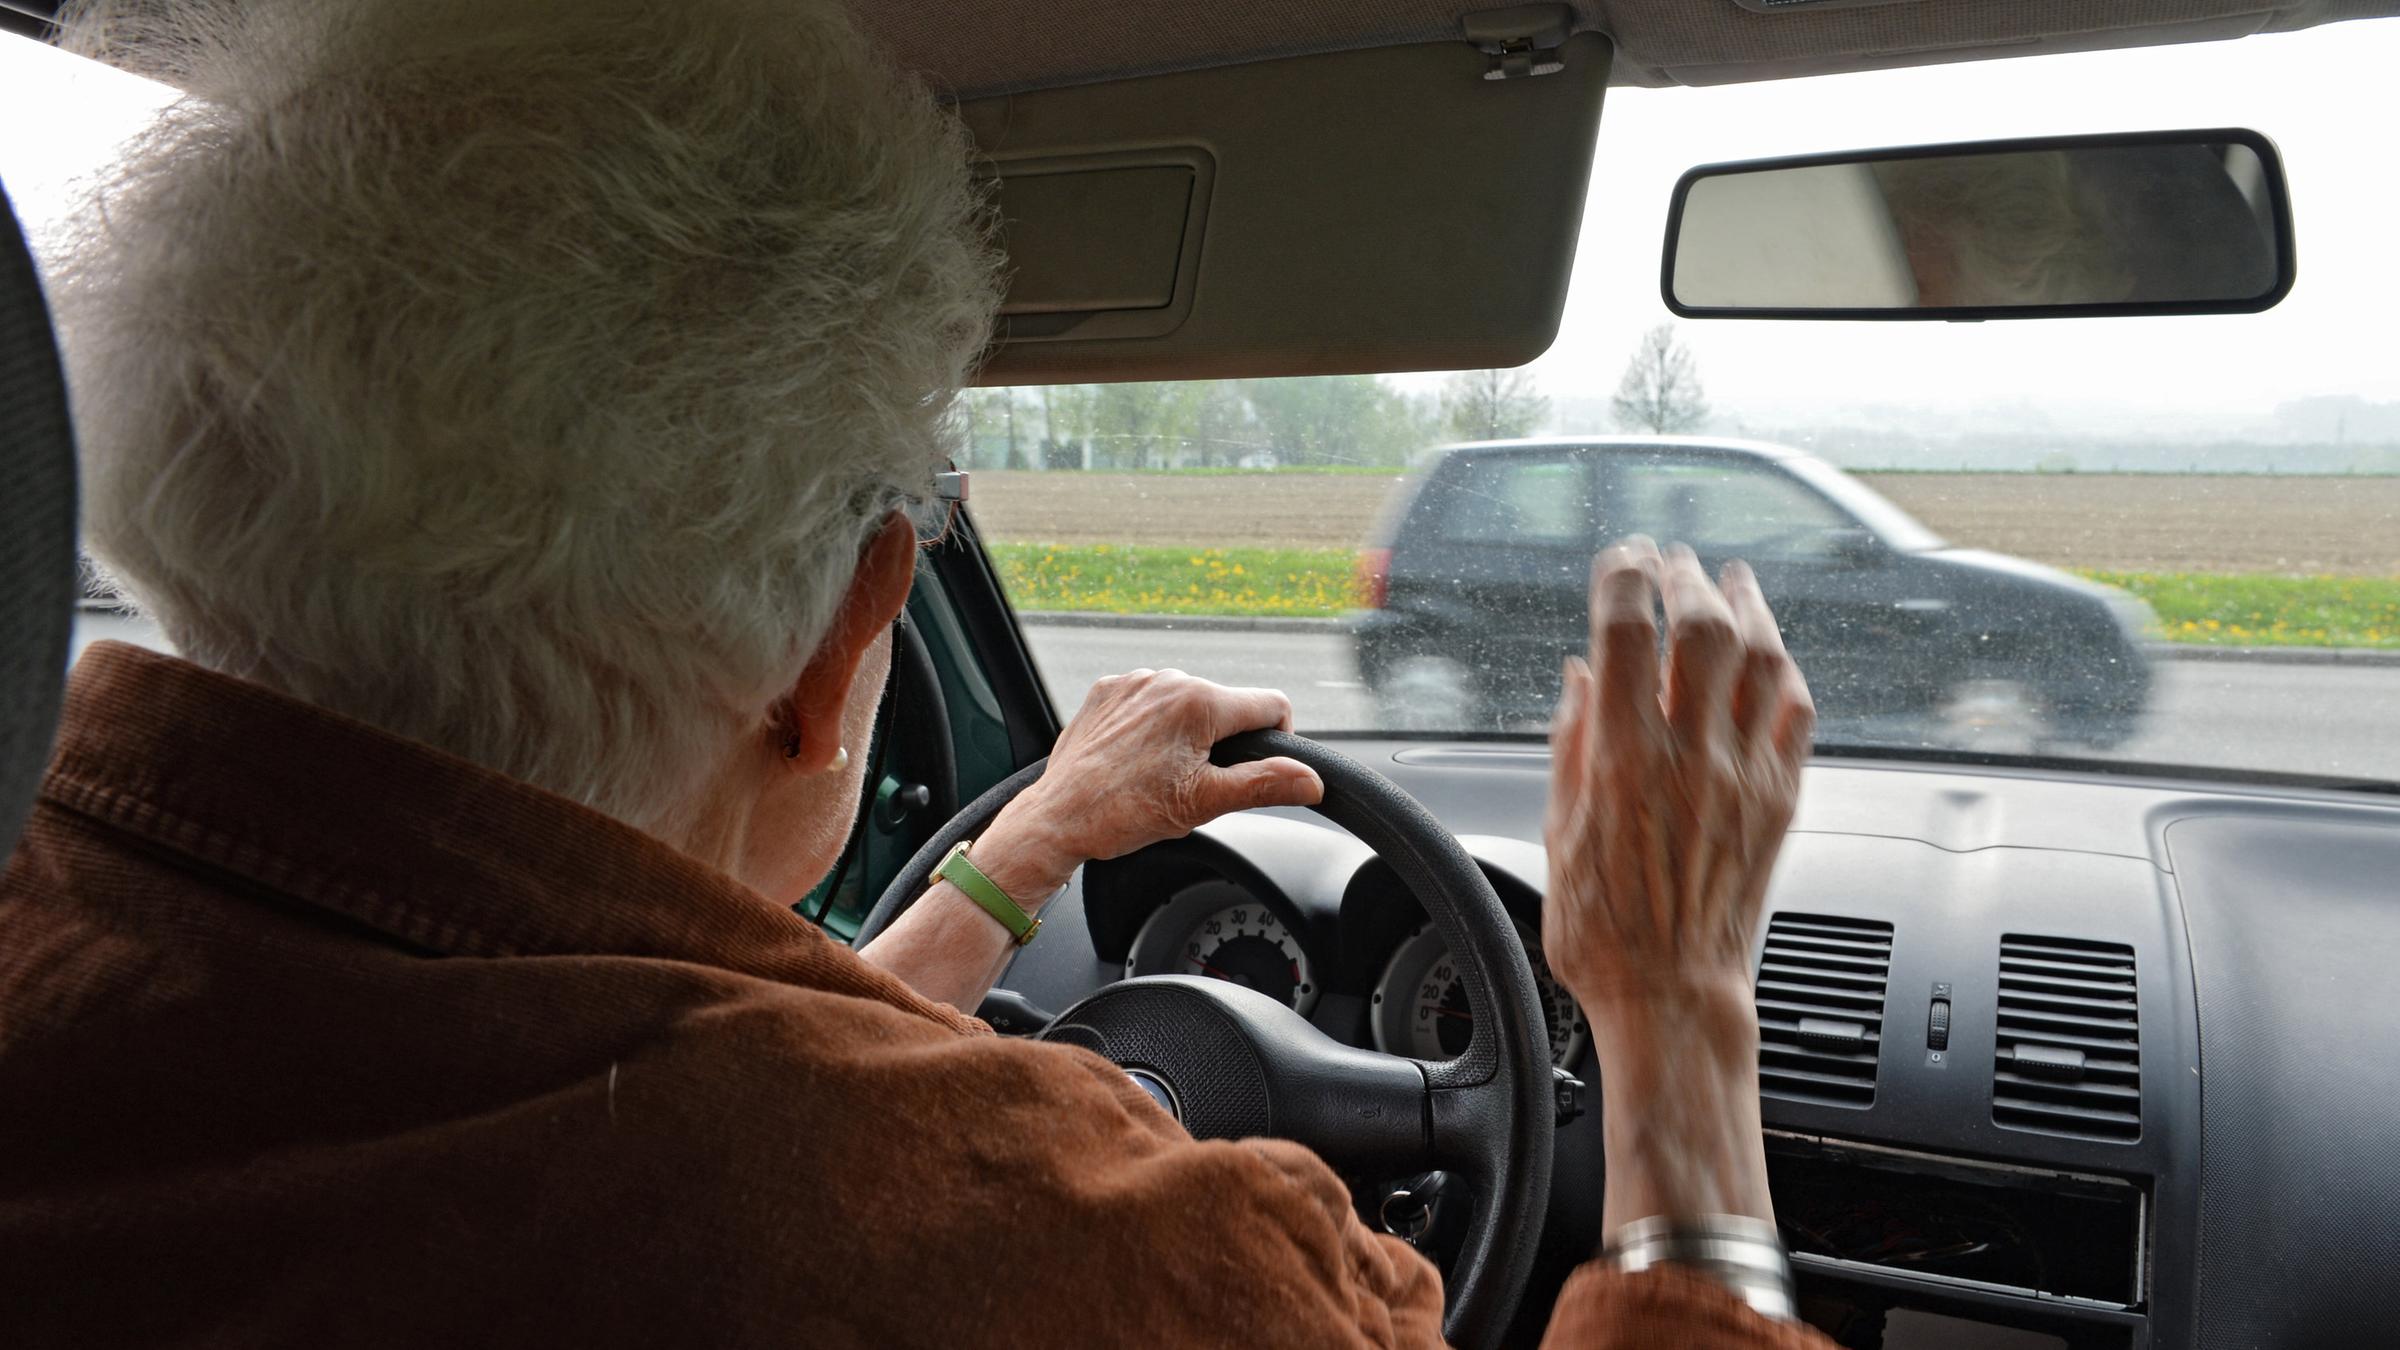 EU-Pläne für Verkehrssicherheit: Senioren-Test sinnvoll? - ZDFheute